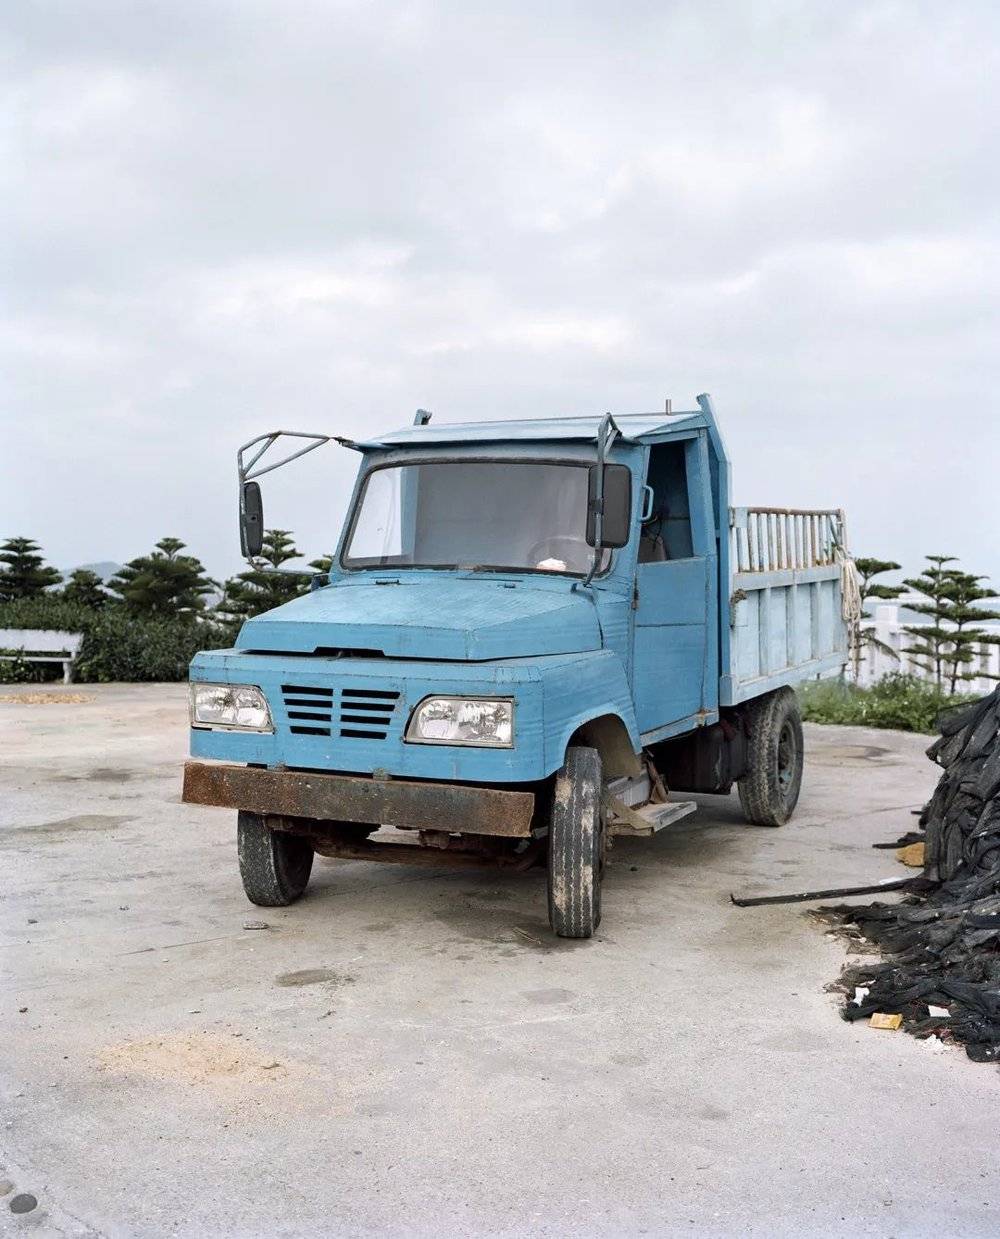 蓝色卡车, 白青乡 / Blue Truck, Baiqing Village, 2017。